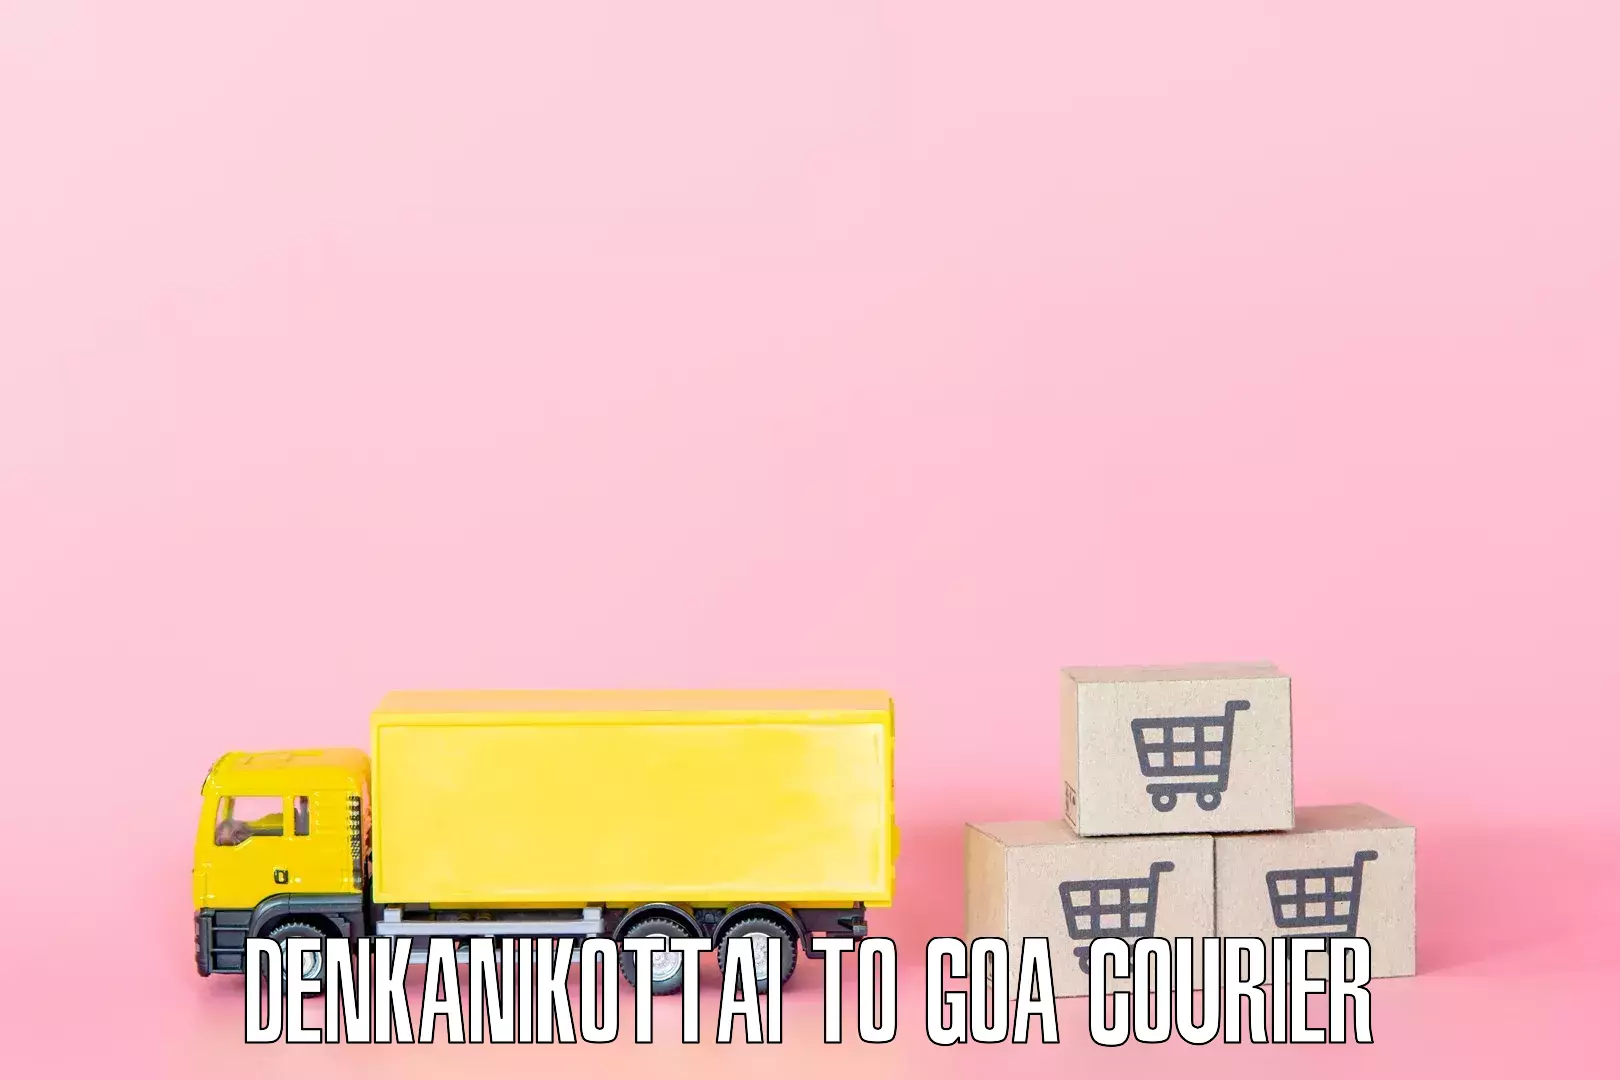 Home shifting services Denkanikottai to NIT Goa